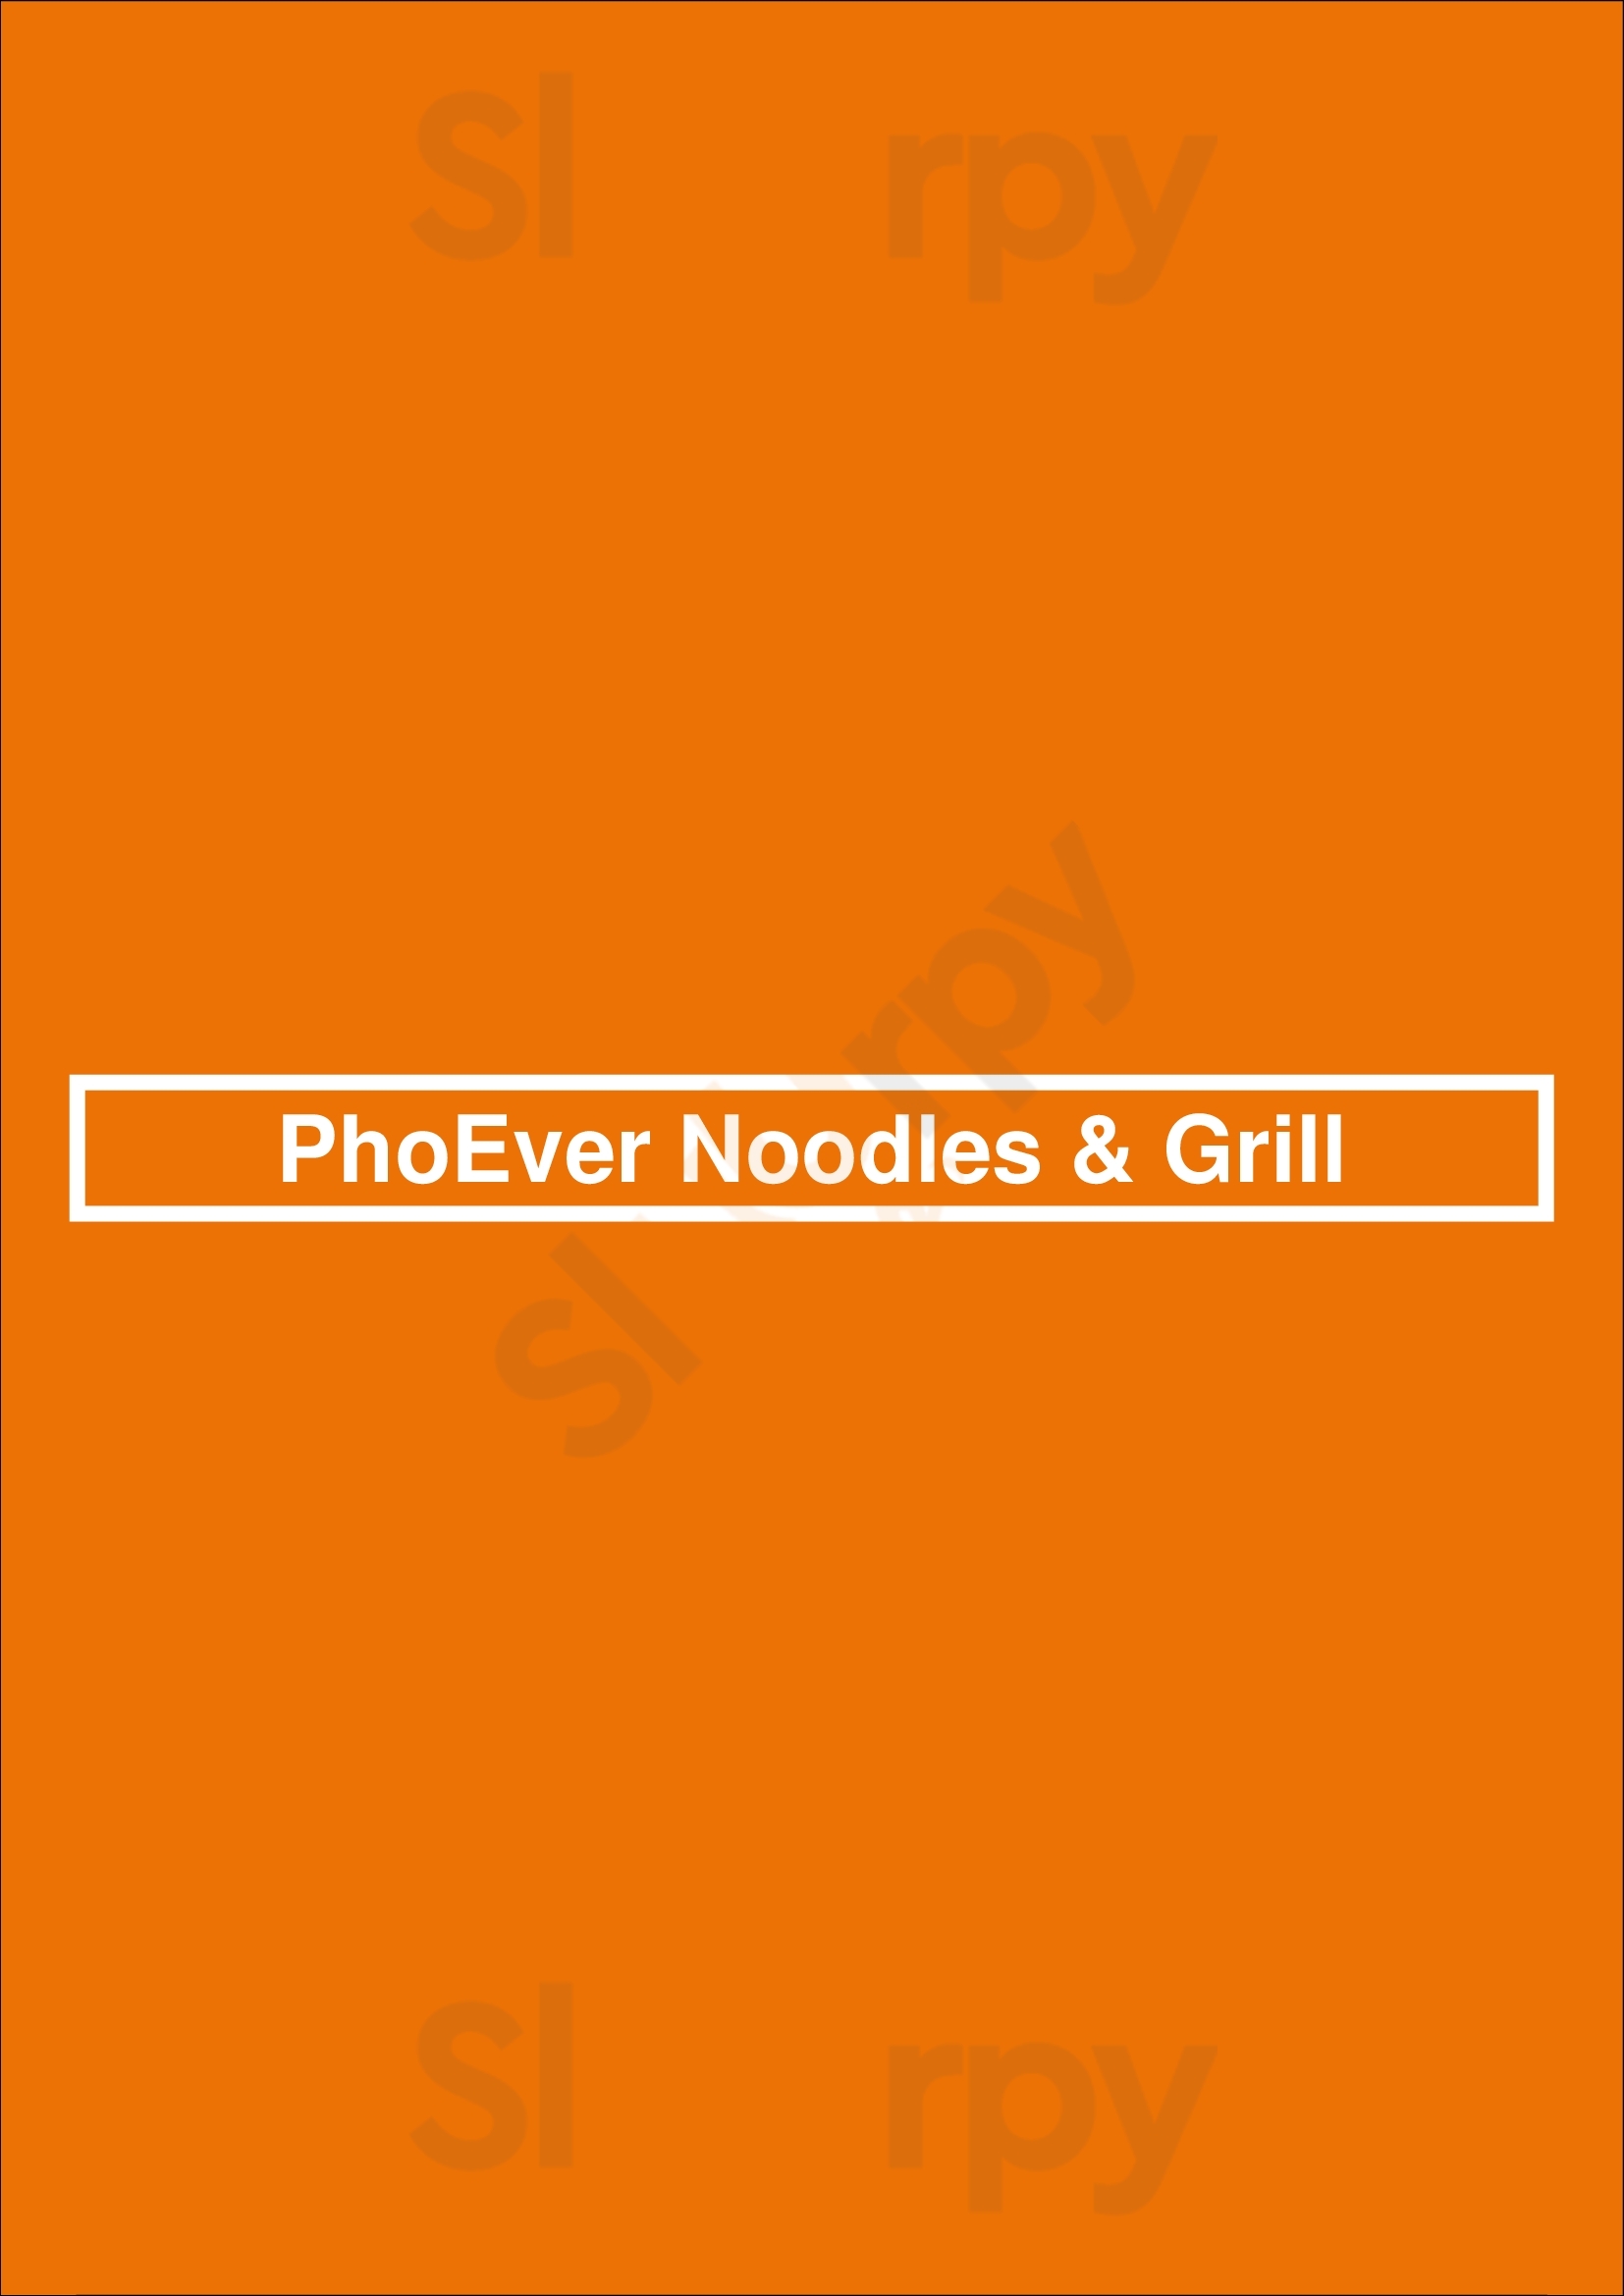 Phoever Noodles & Grill Edmonton Menu - 1